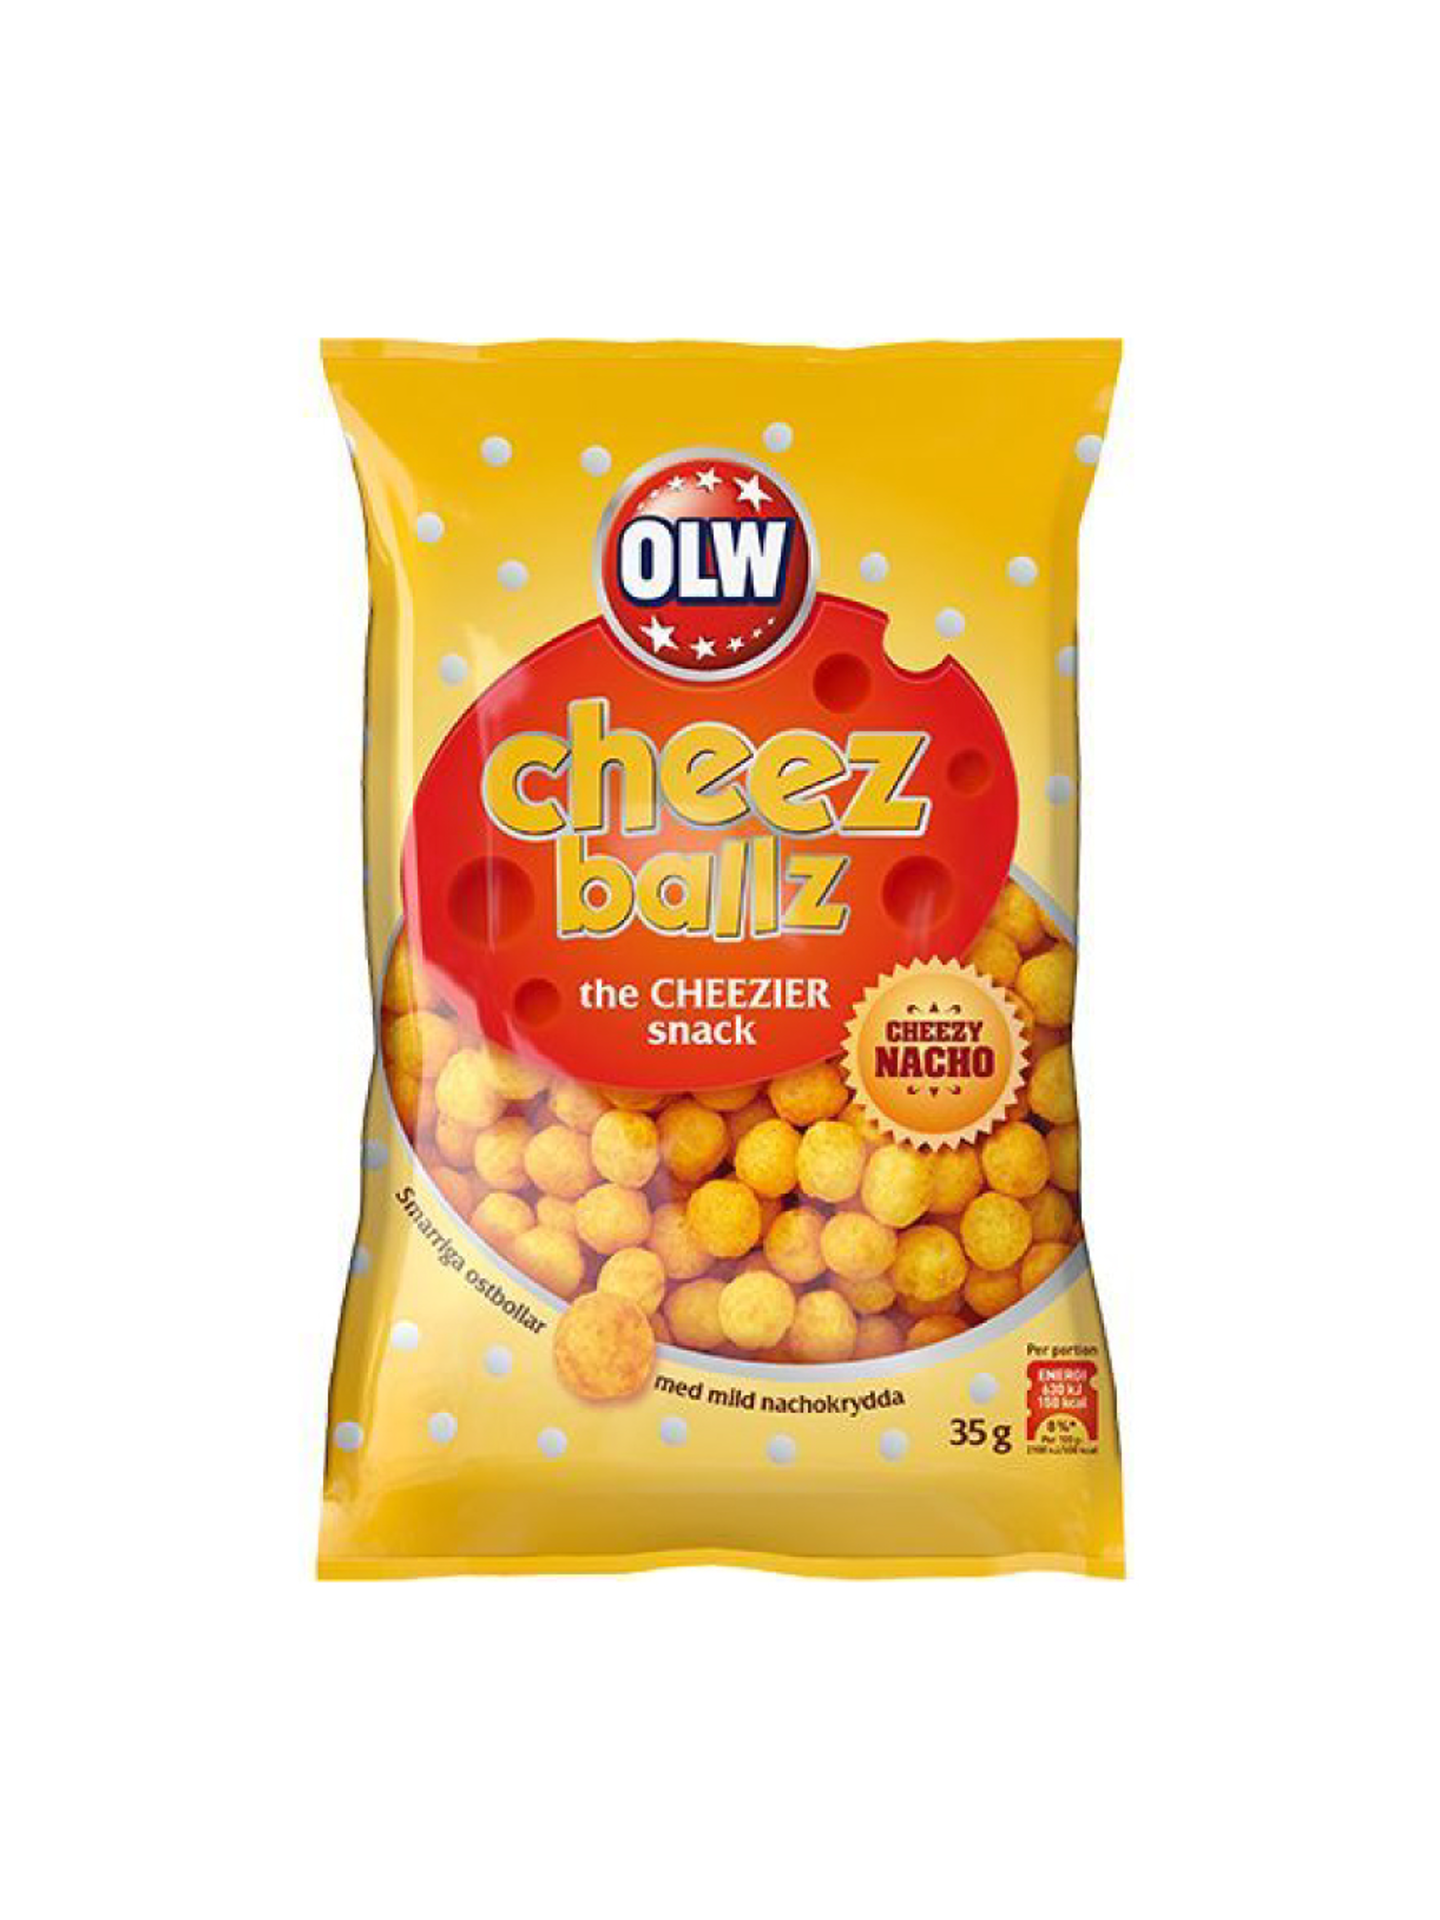 [OLW] 치즈 볼즈 나쵸맛 35g